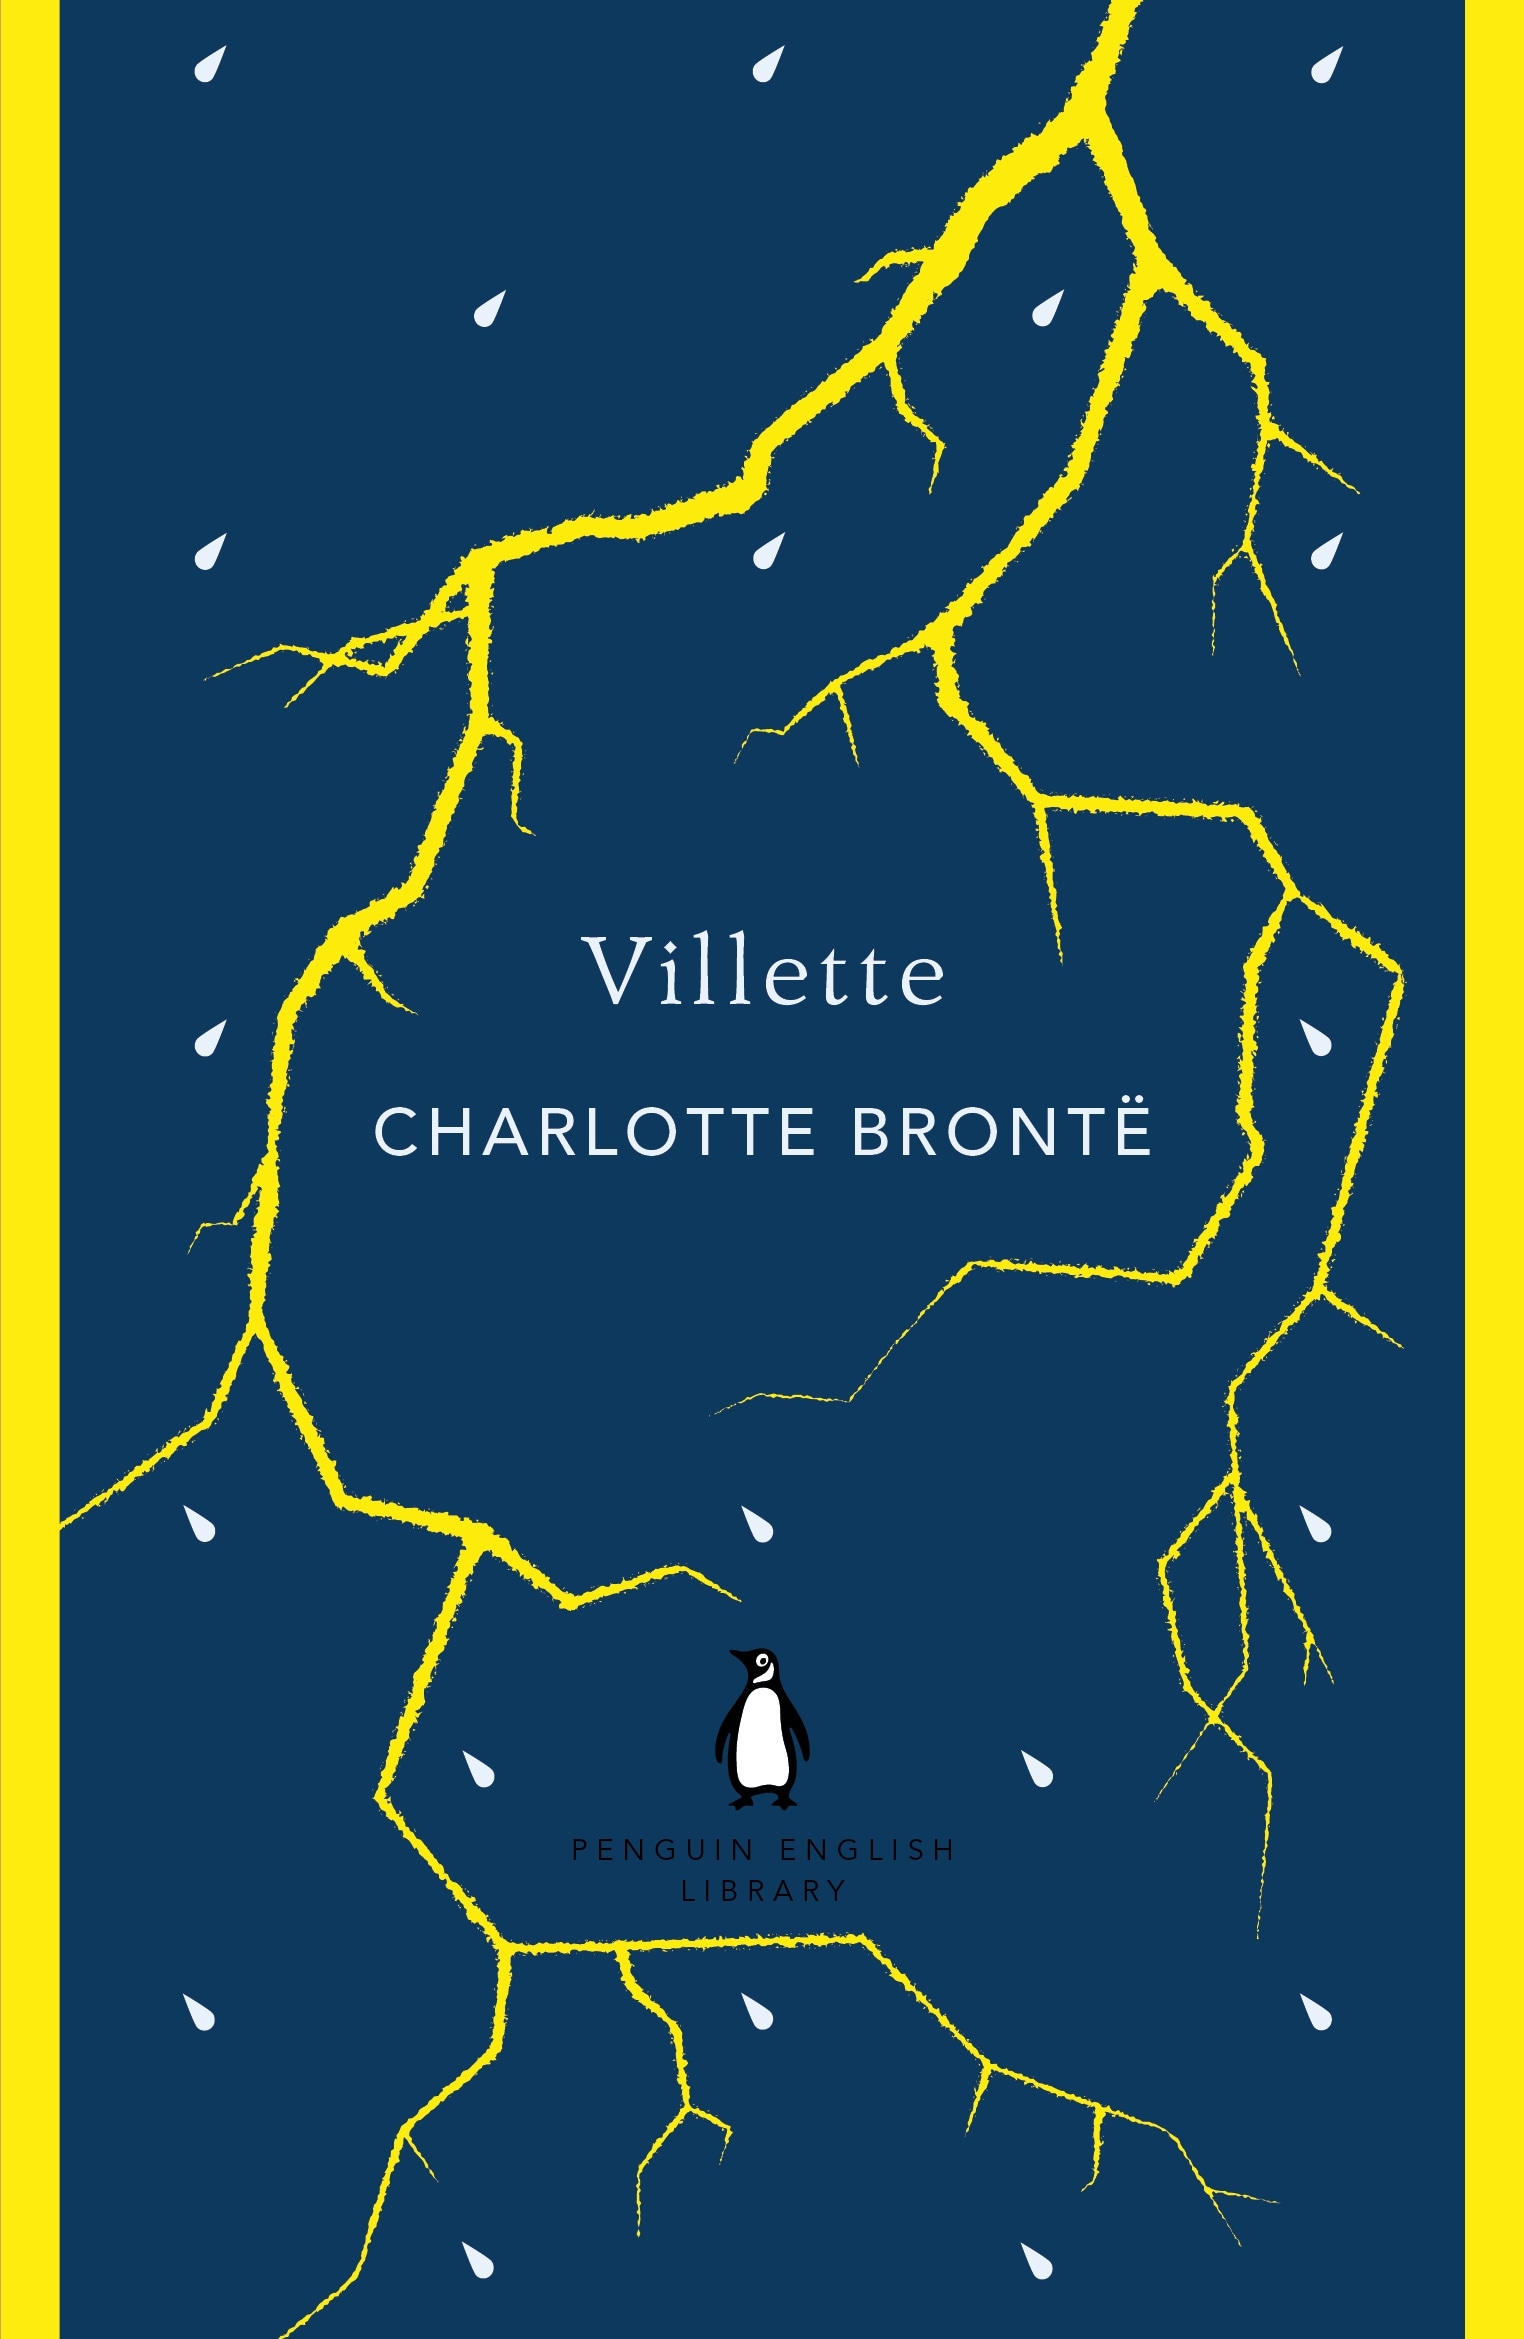 Book “Villette” by Charlotte Bronte — October 25, 2012